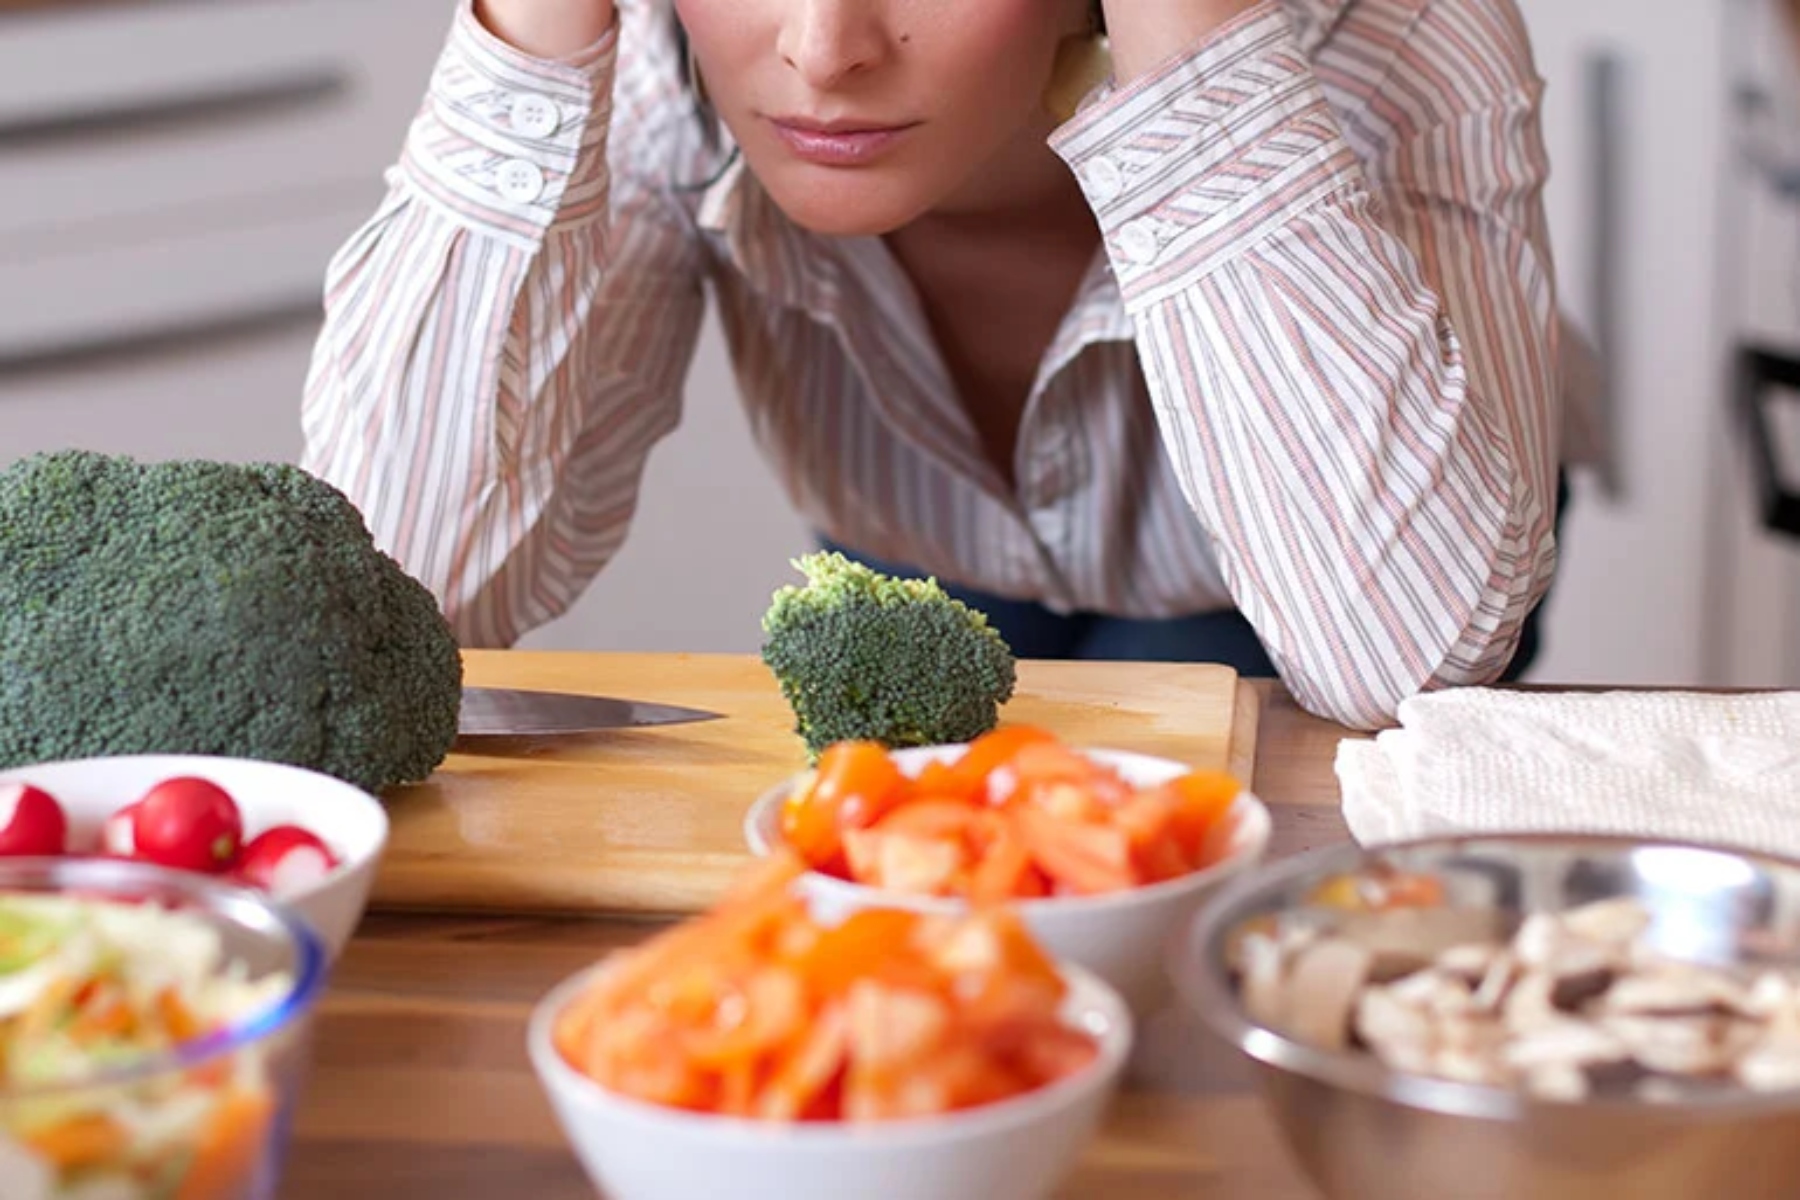 Νευρική ορθορεξία: Όταν η υγιεινή διατροφή γίνεται ανθυγιεινή εμμονή